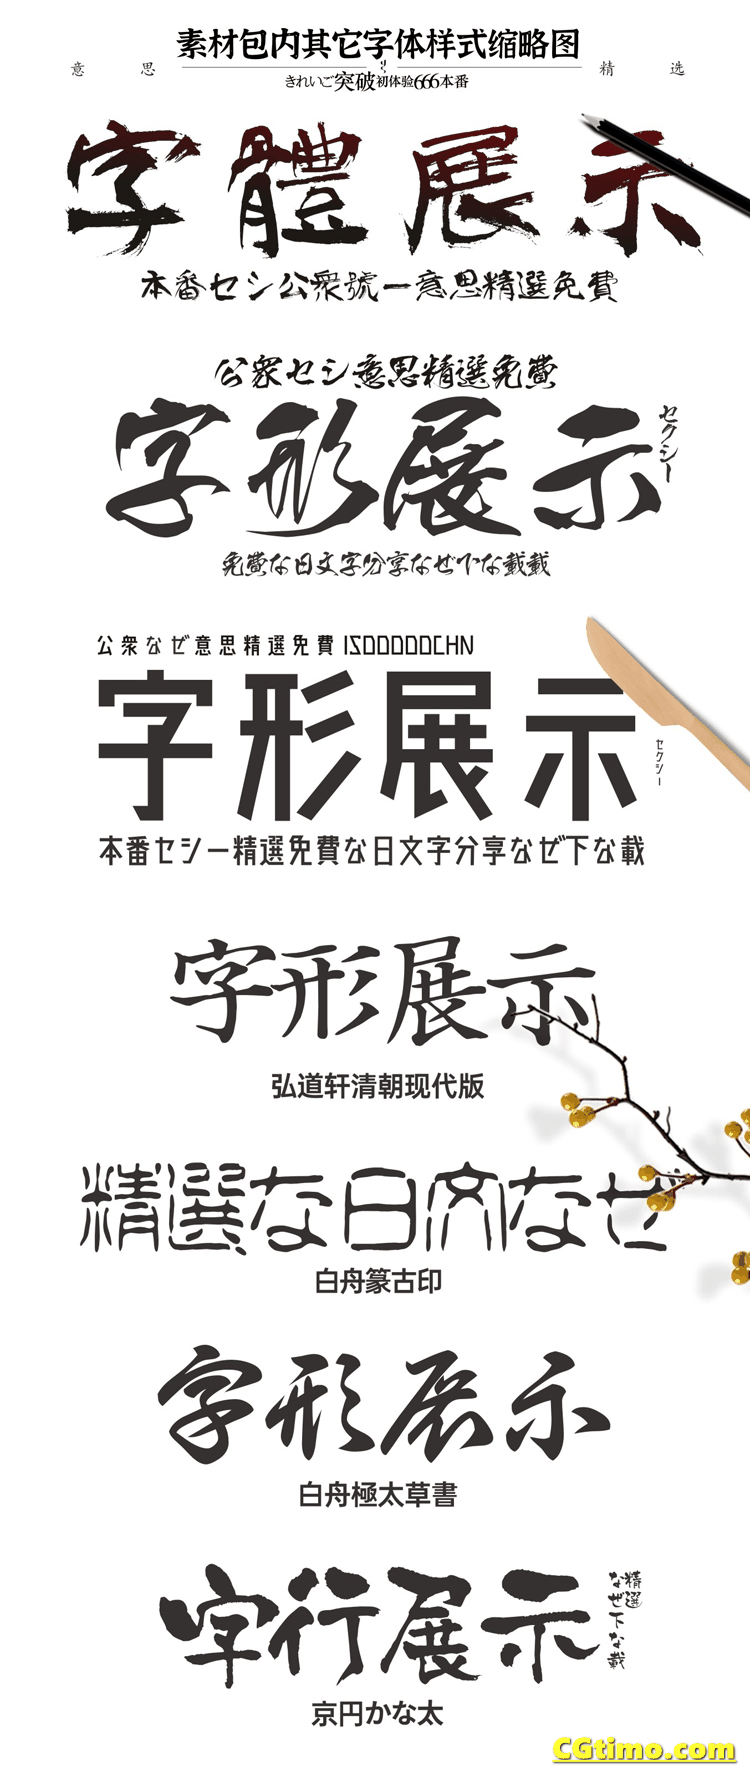 字体-14款无版权可商用日文字体 字体下载 第9张